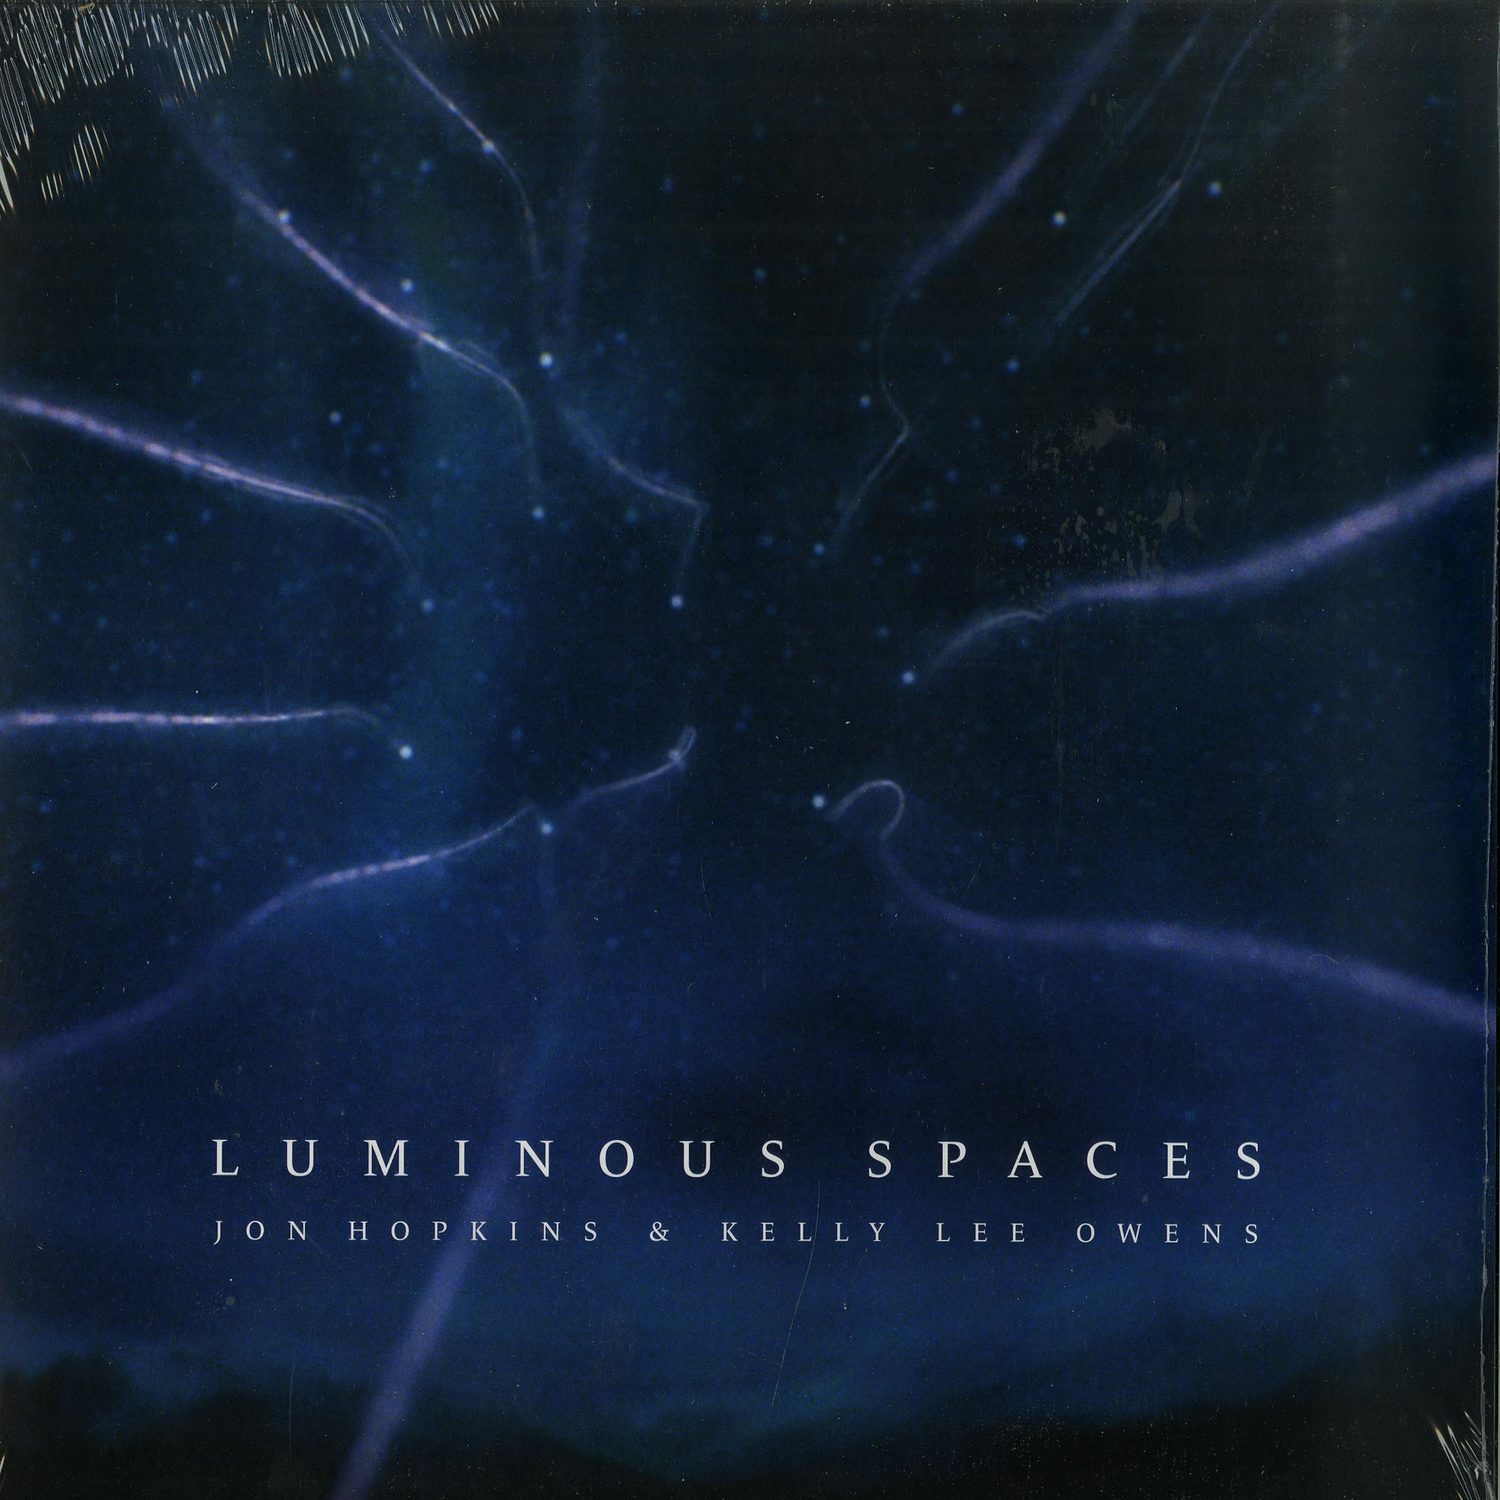 Jon Hopkins & Kelly Lee Owens - LUMINOUS SPACES / LUMINOUS BEINGS 